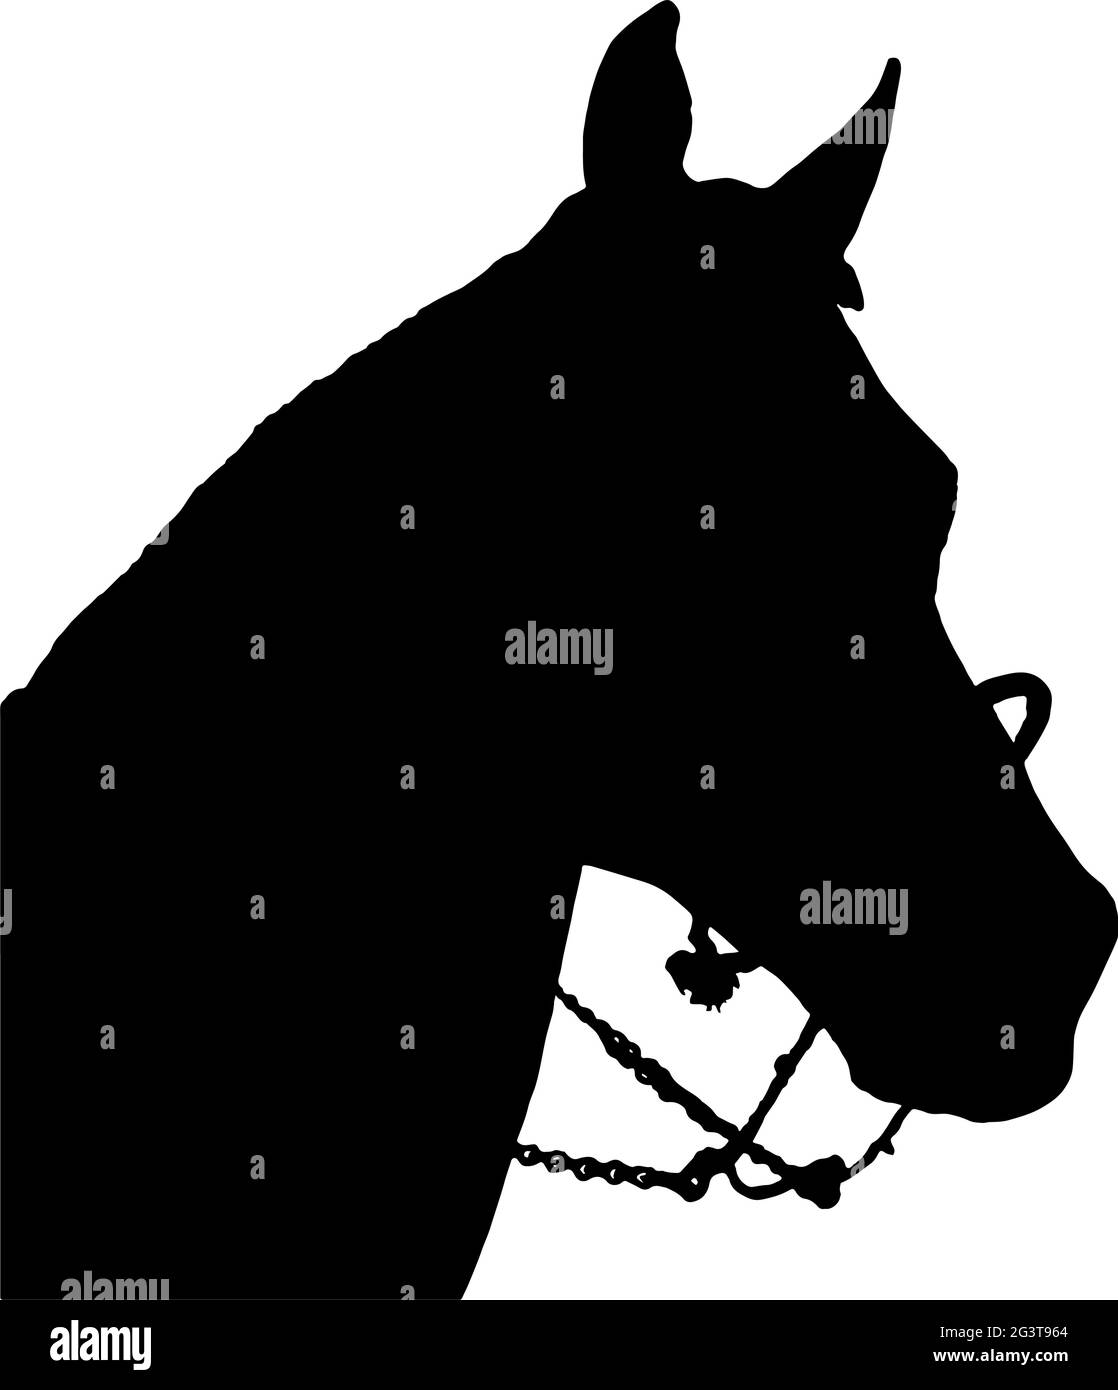 Pferdekopf Silhouette in schwarz auf weißem Hintergrund Vektor-Illustration Stock Vektor